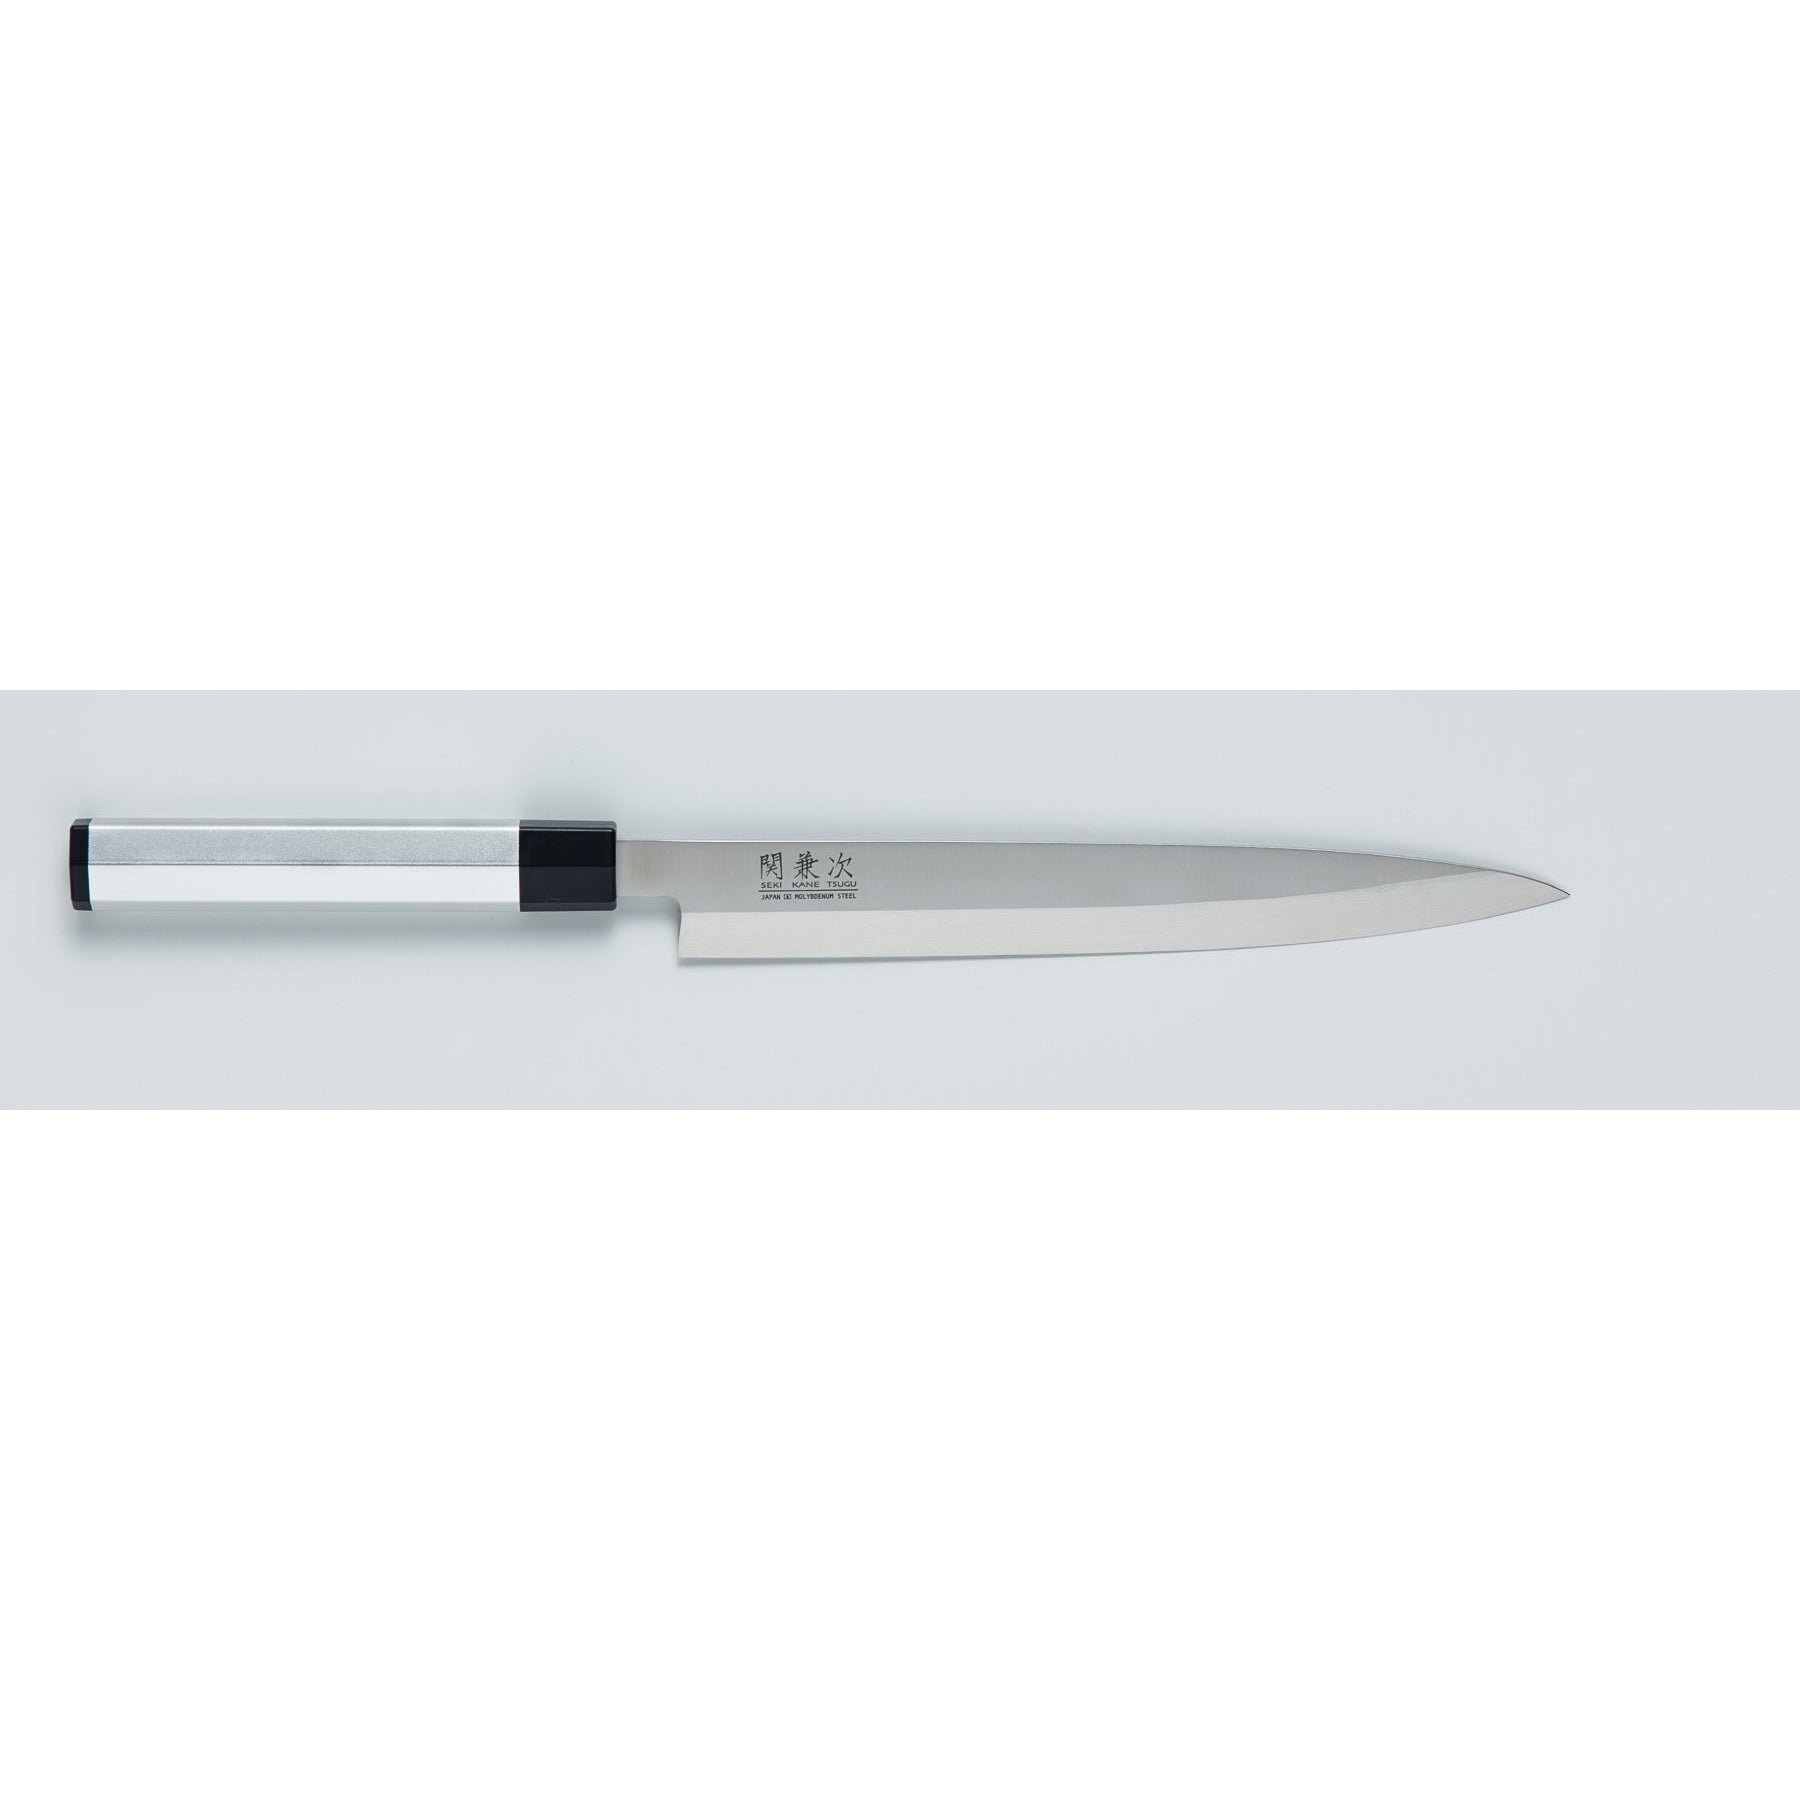 Sekikanetsugu Single Edged Japanese Sashimi Knife with Aluminum Handle 240mm